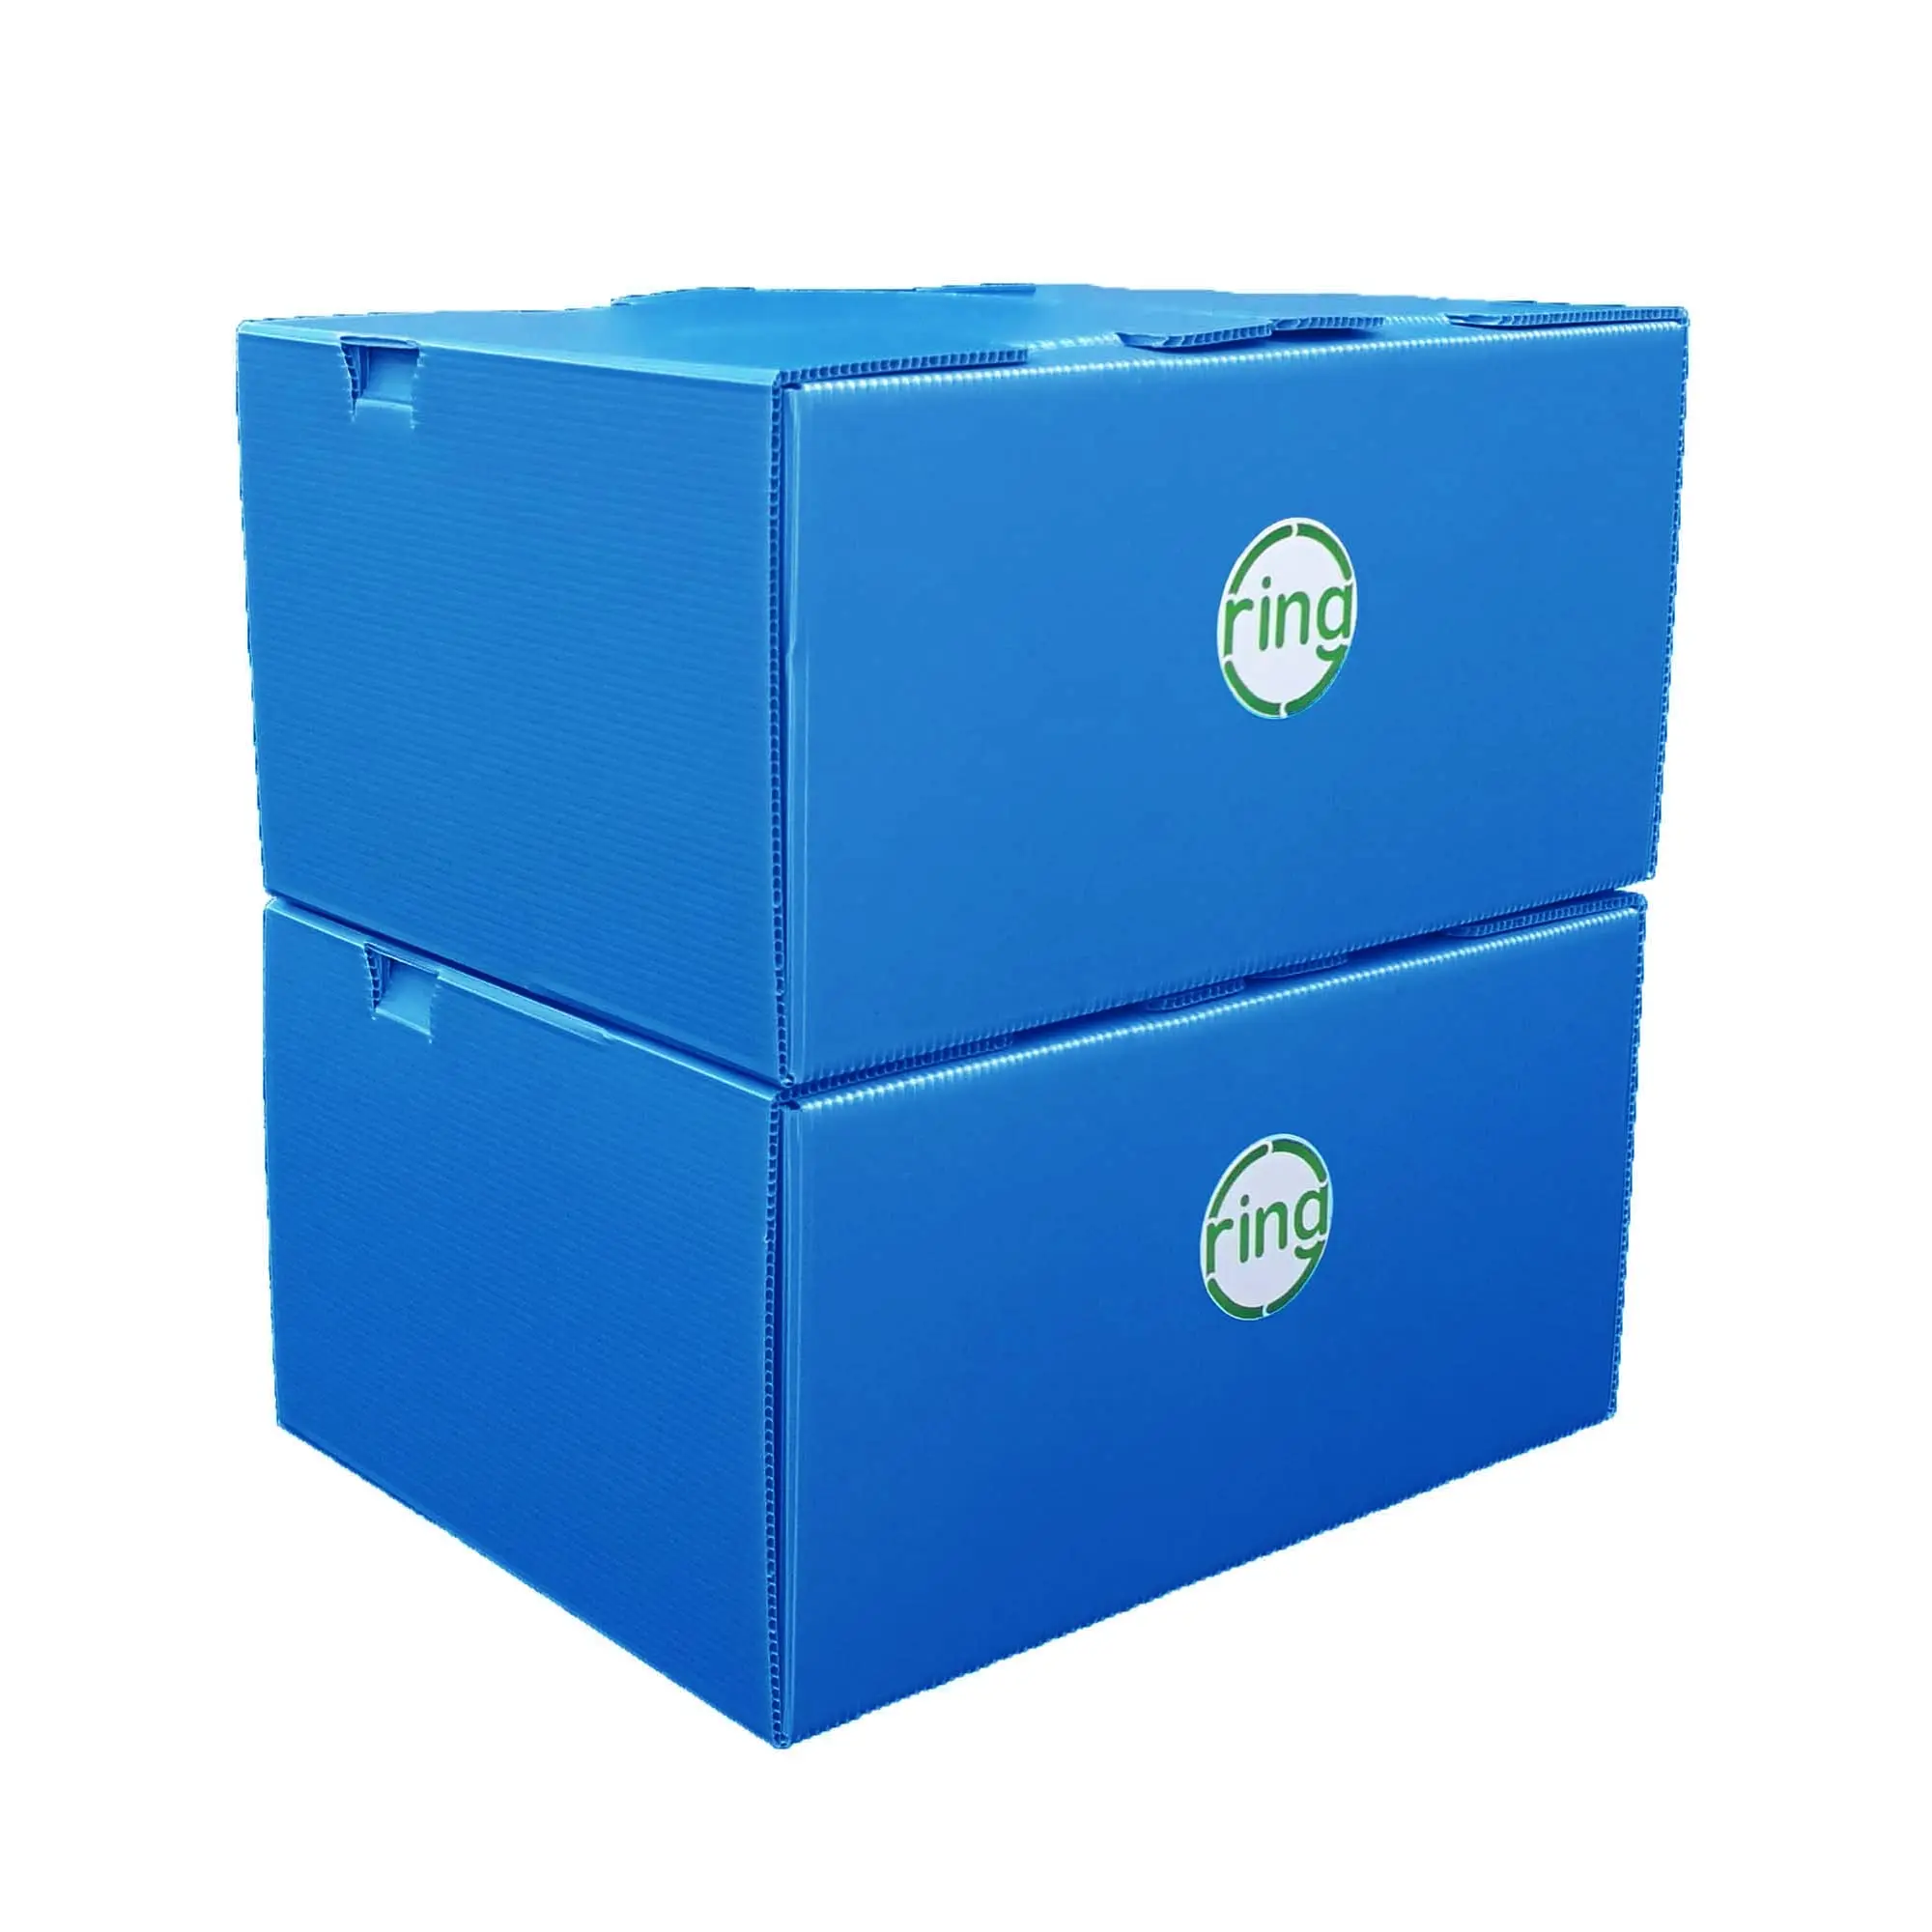 cajas carton plastico - Cómo es la caja de cartón